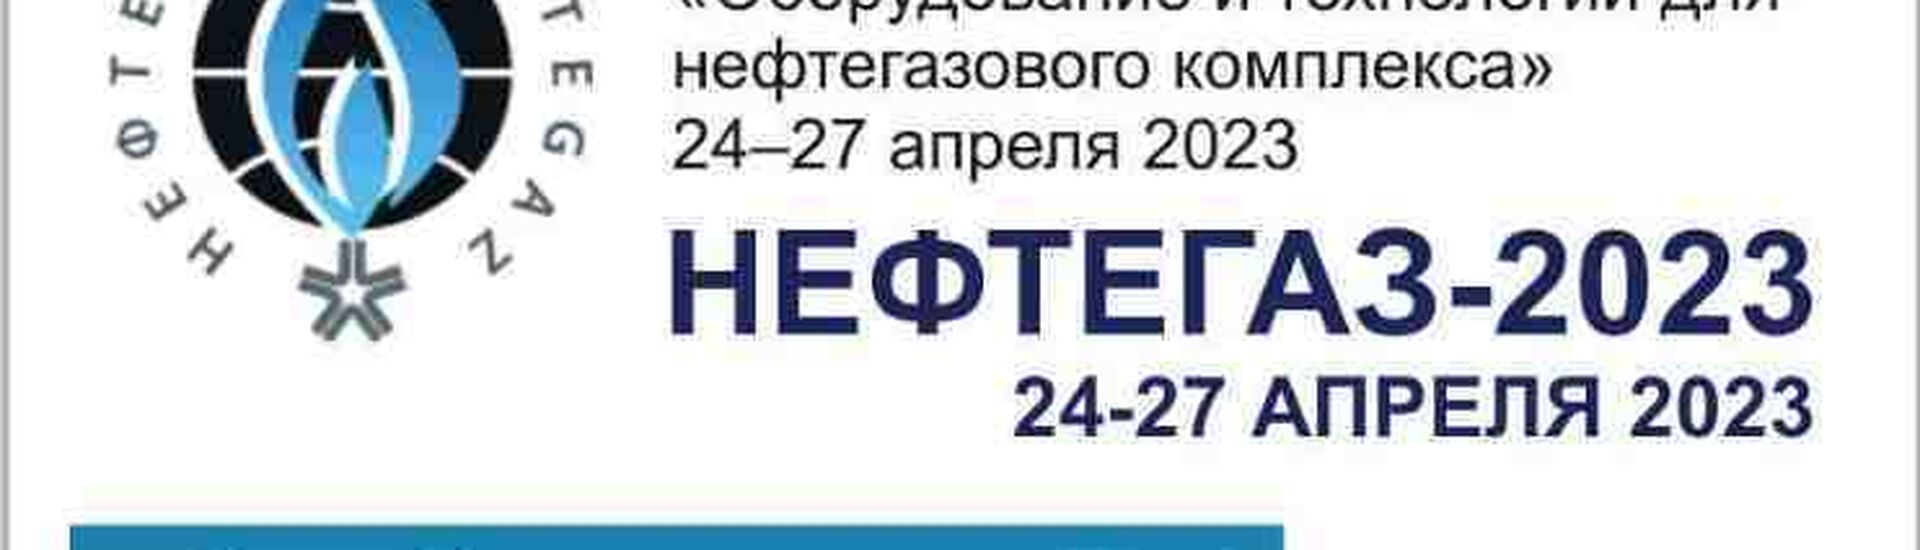 22-я Ежегодная выставка "НЕФТЕГАЗ 2023"             24-27 апреля 2023 г. Павильон 1 СТЕНД 1G14